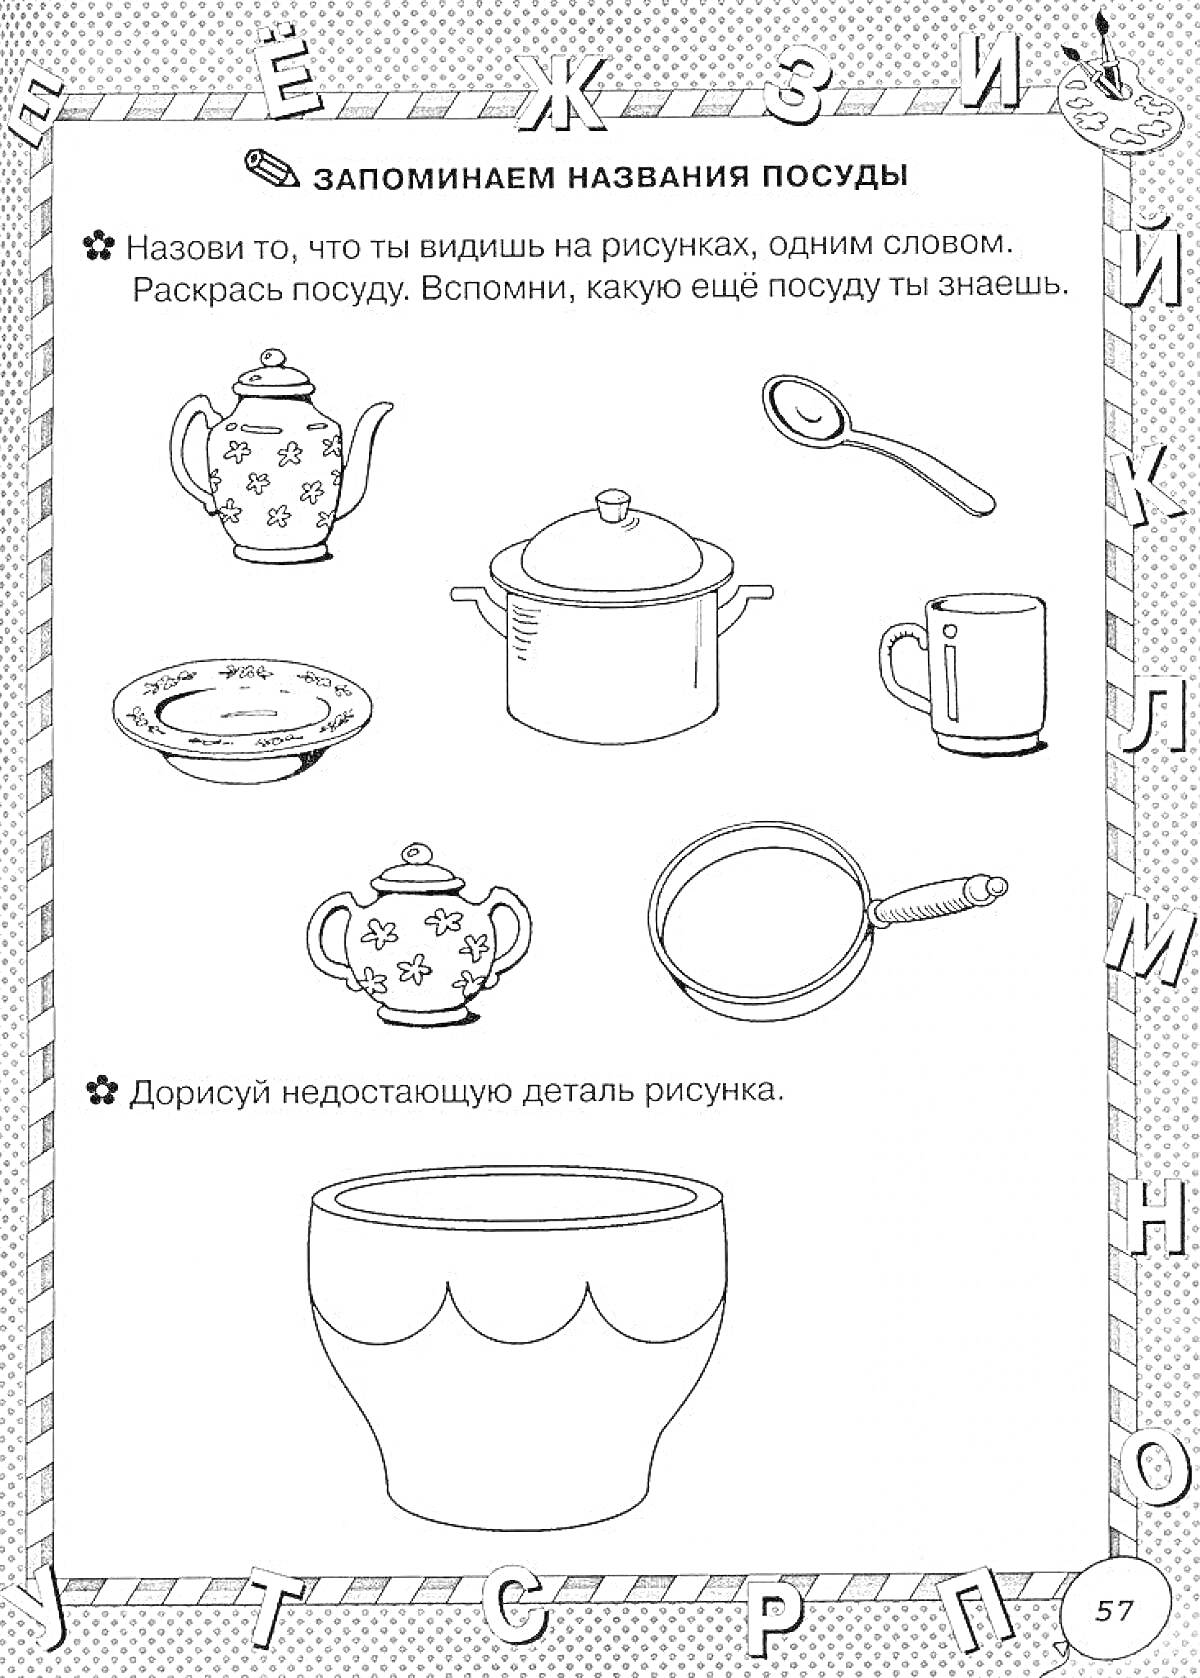 выборка посуды с чайником, кастрюлей, ложкой, тарелкой, кружкой, сотейником, чашкой и миской